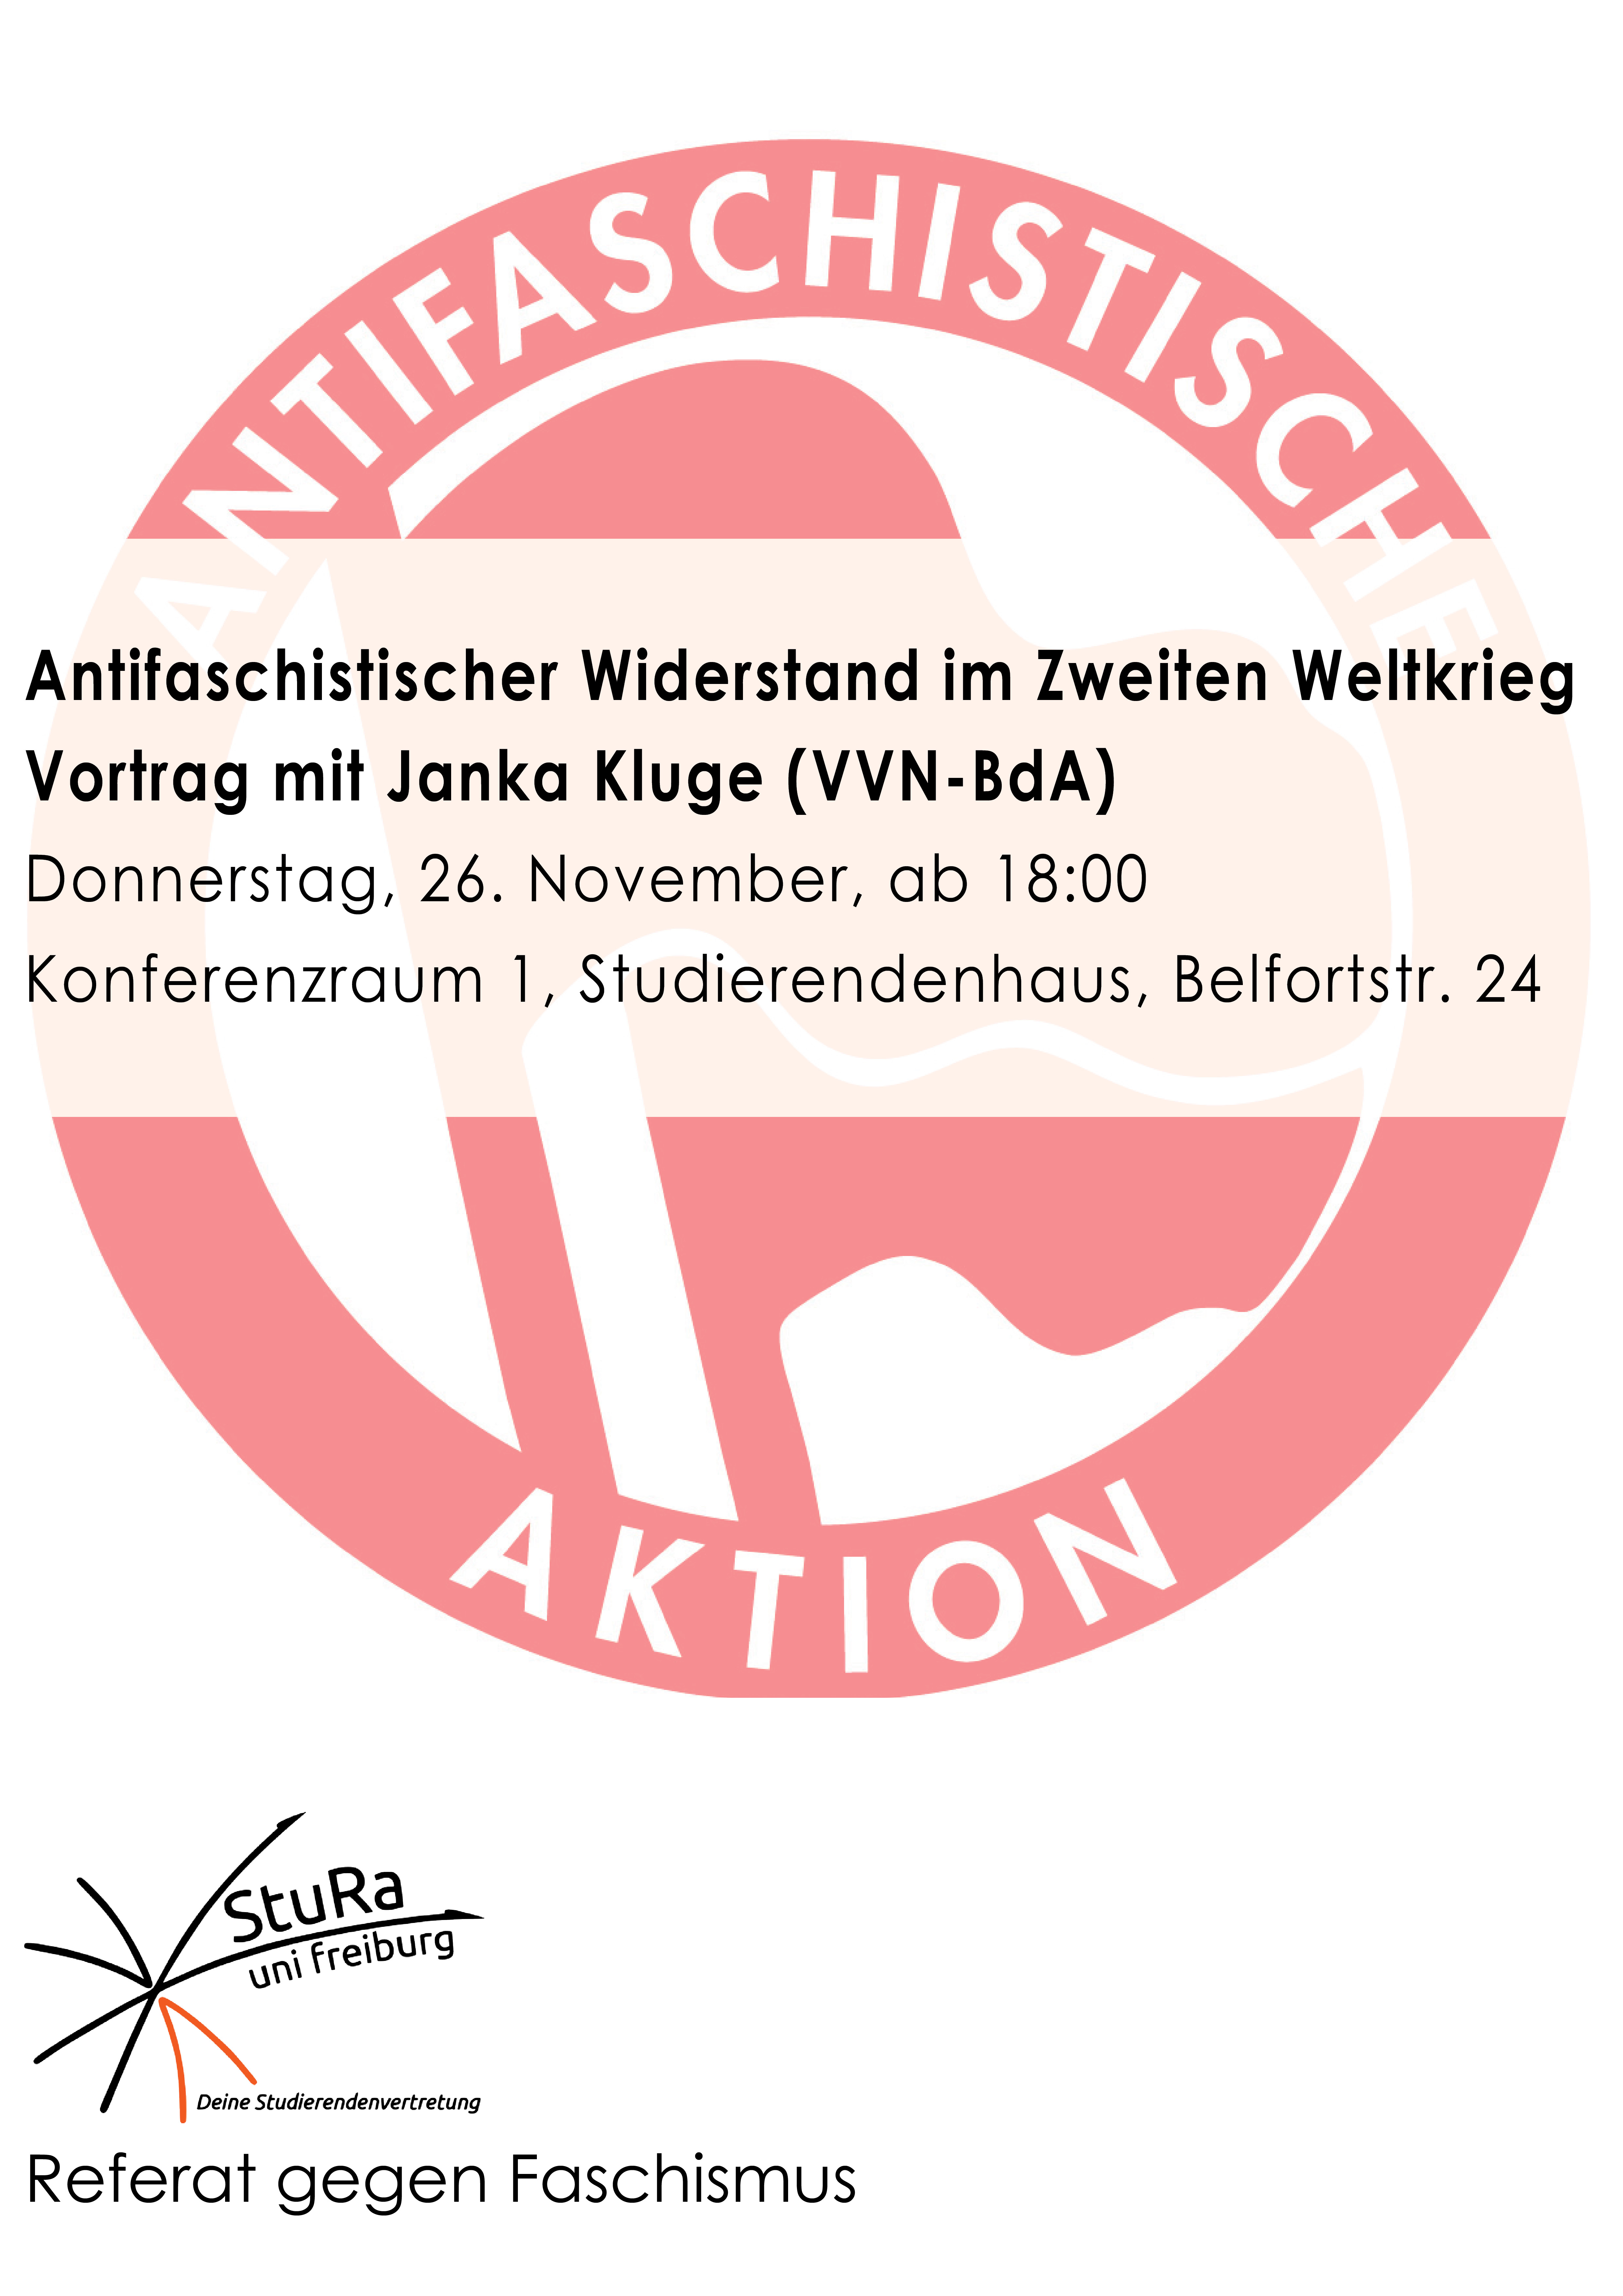 Vortrag: Antifaschistischer Widerstand im Zweiten Weltkrieg